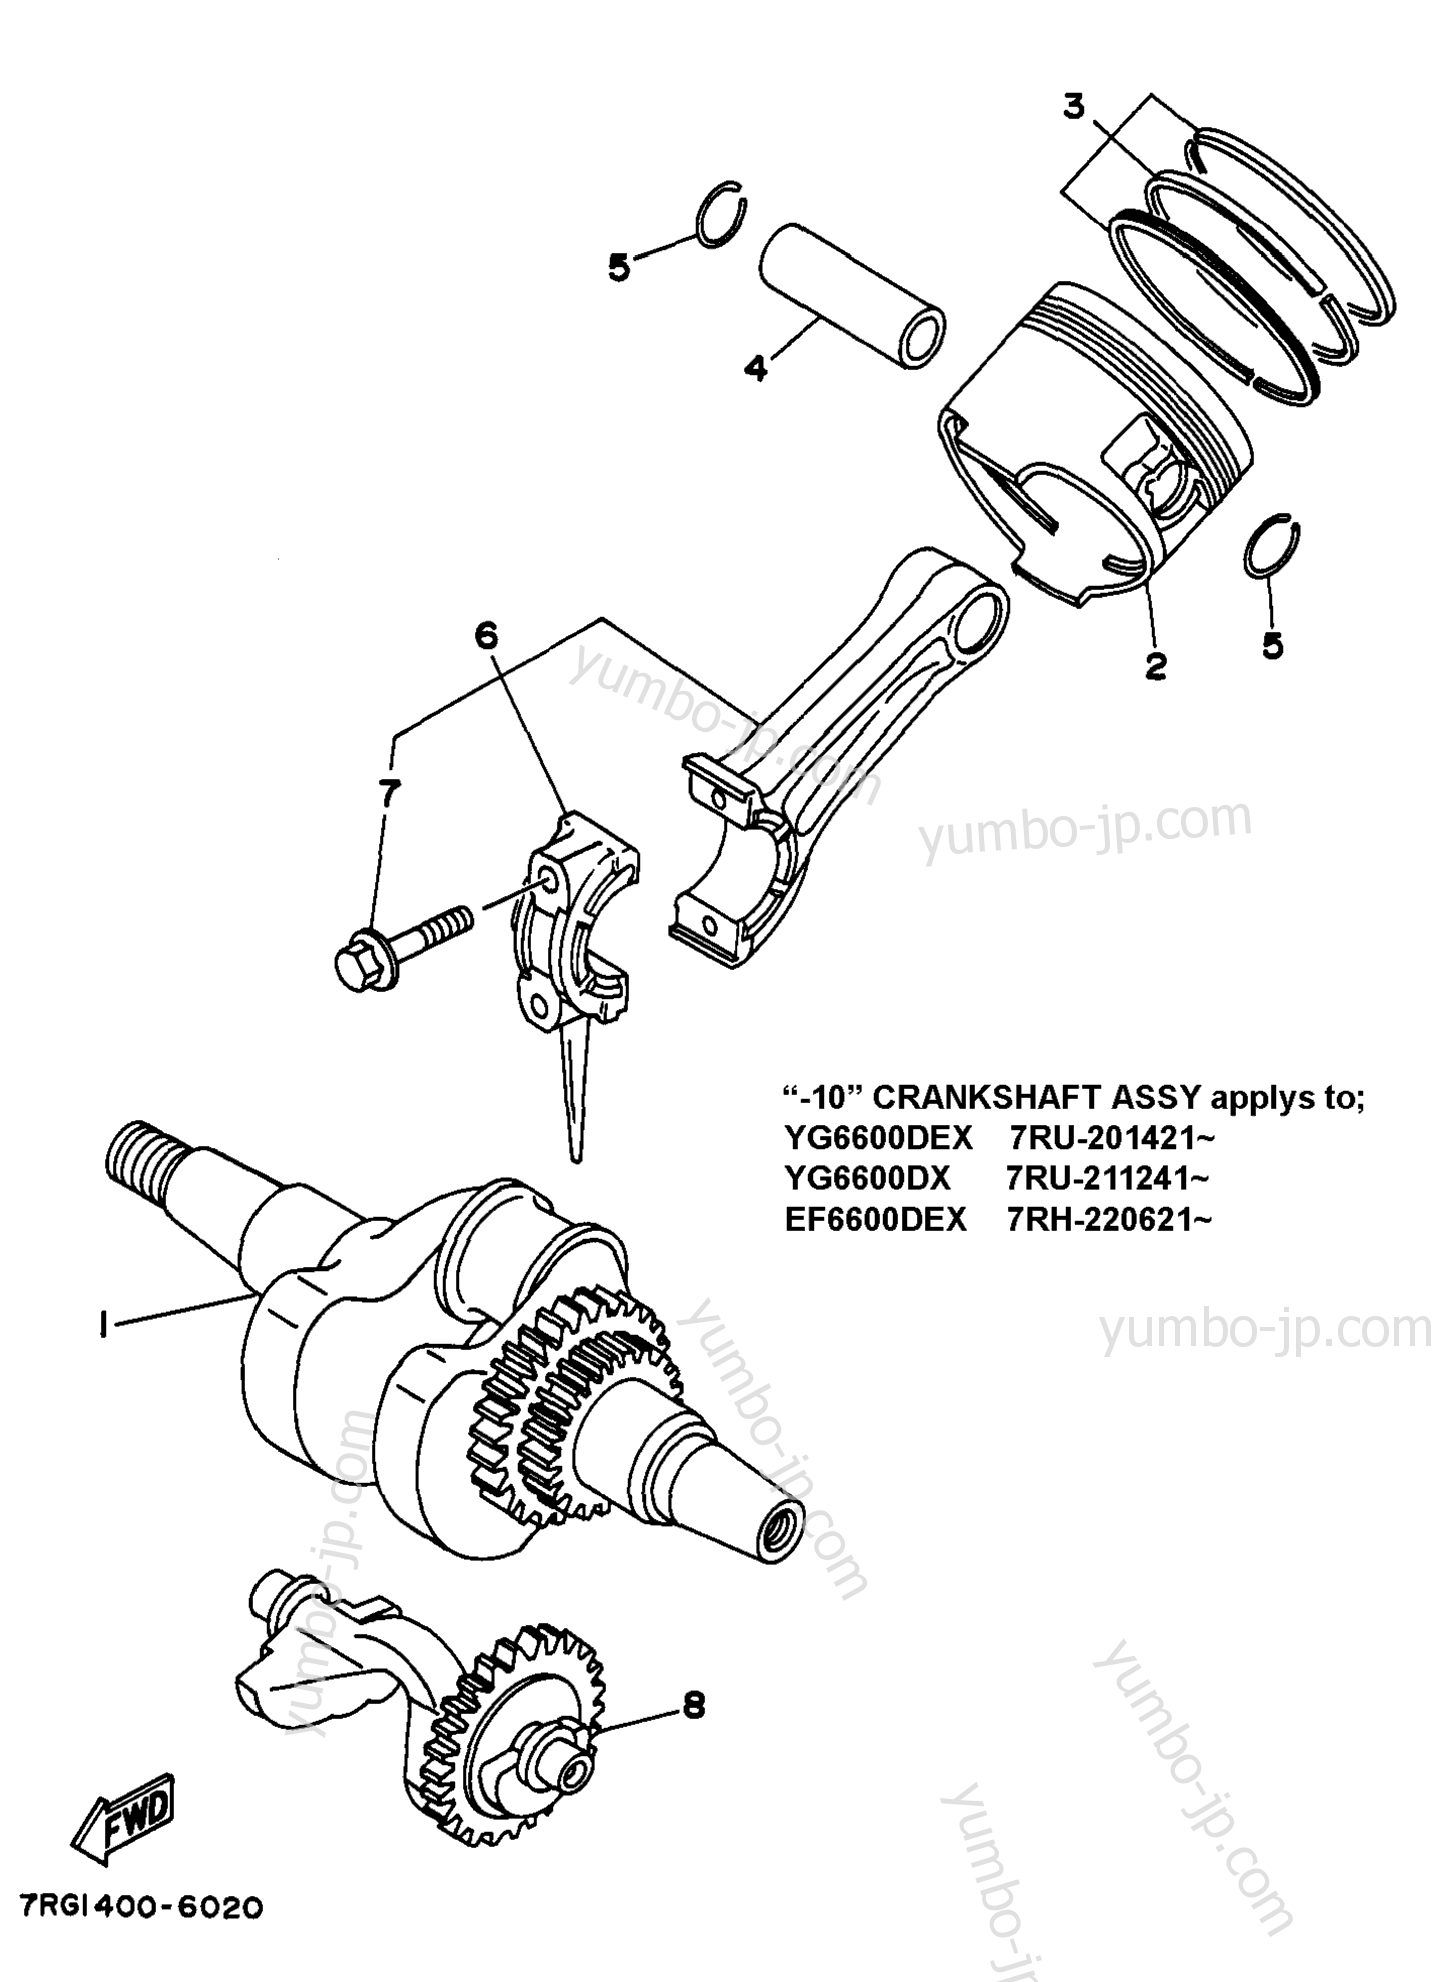 Crankshaft Piston All для генераторов YAMAHA EF4600DEX 